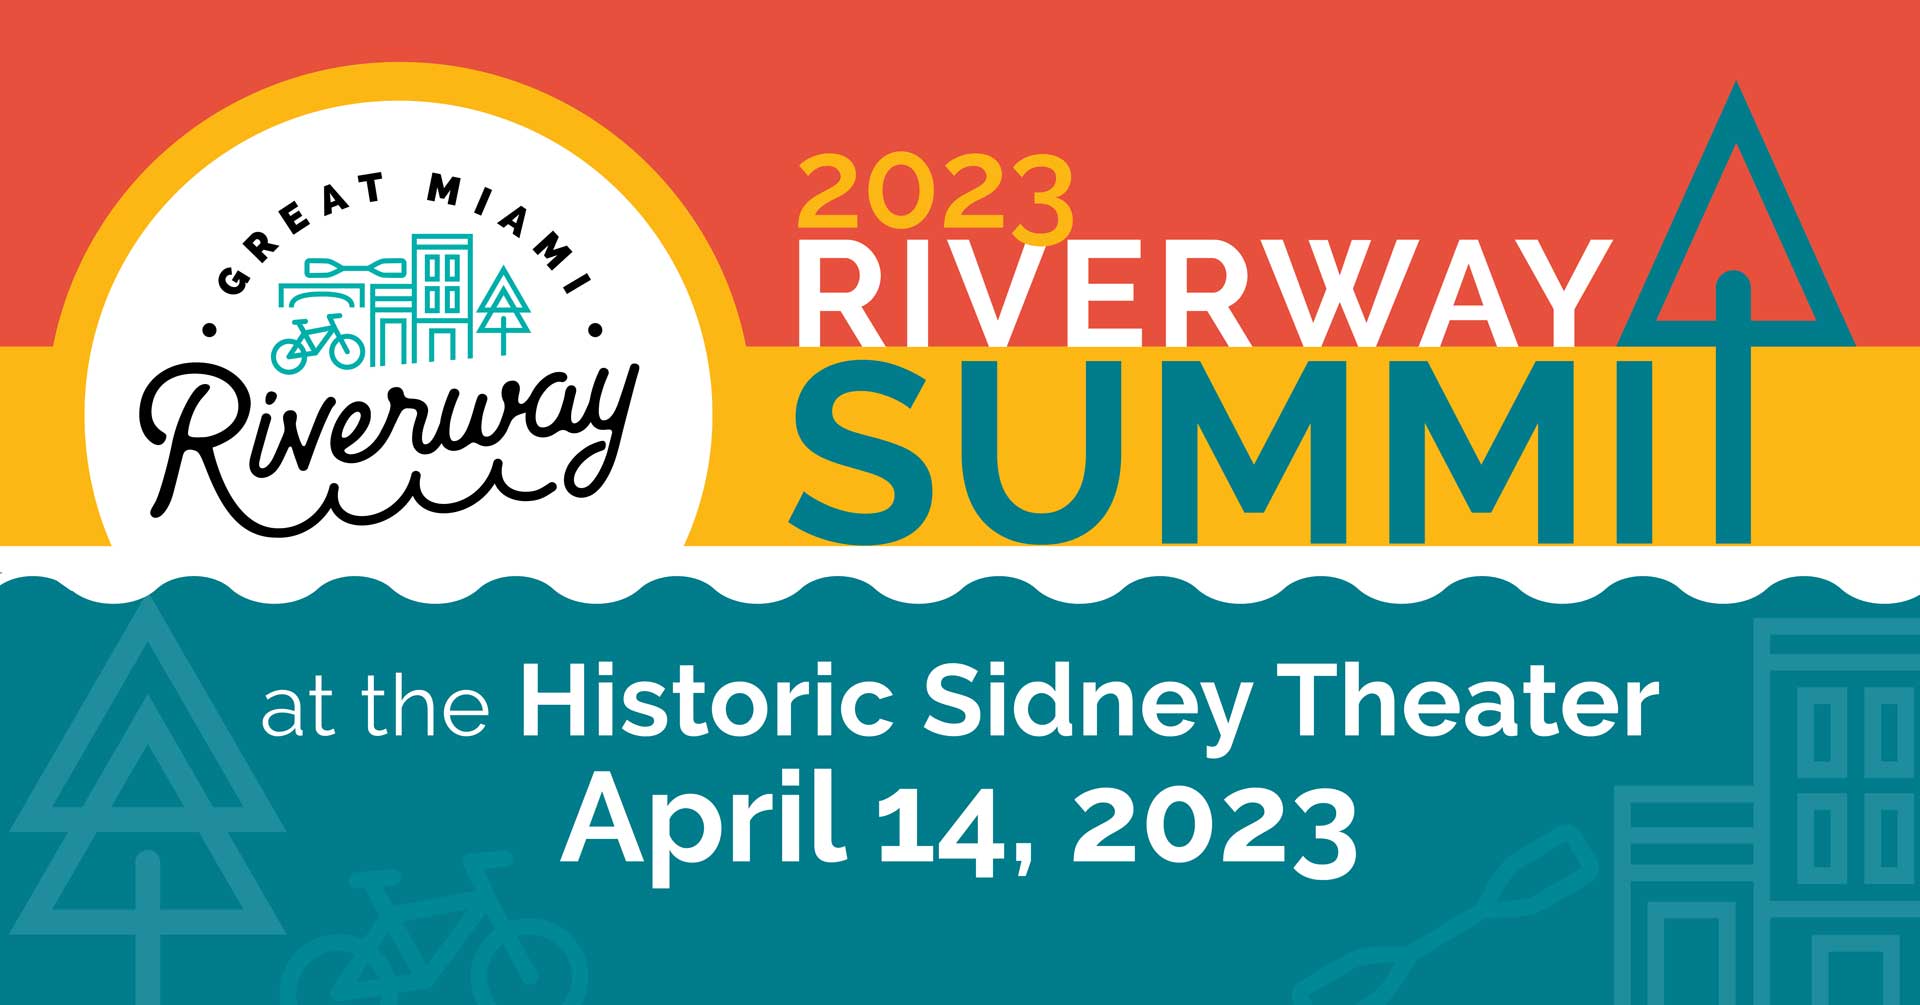 Riverway Summit 2023